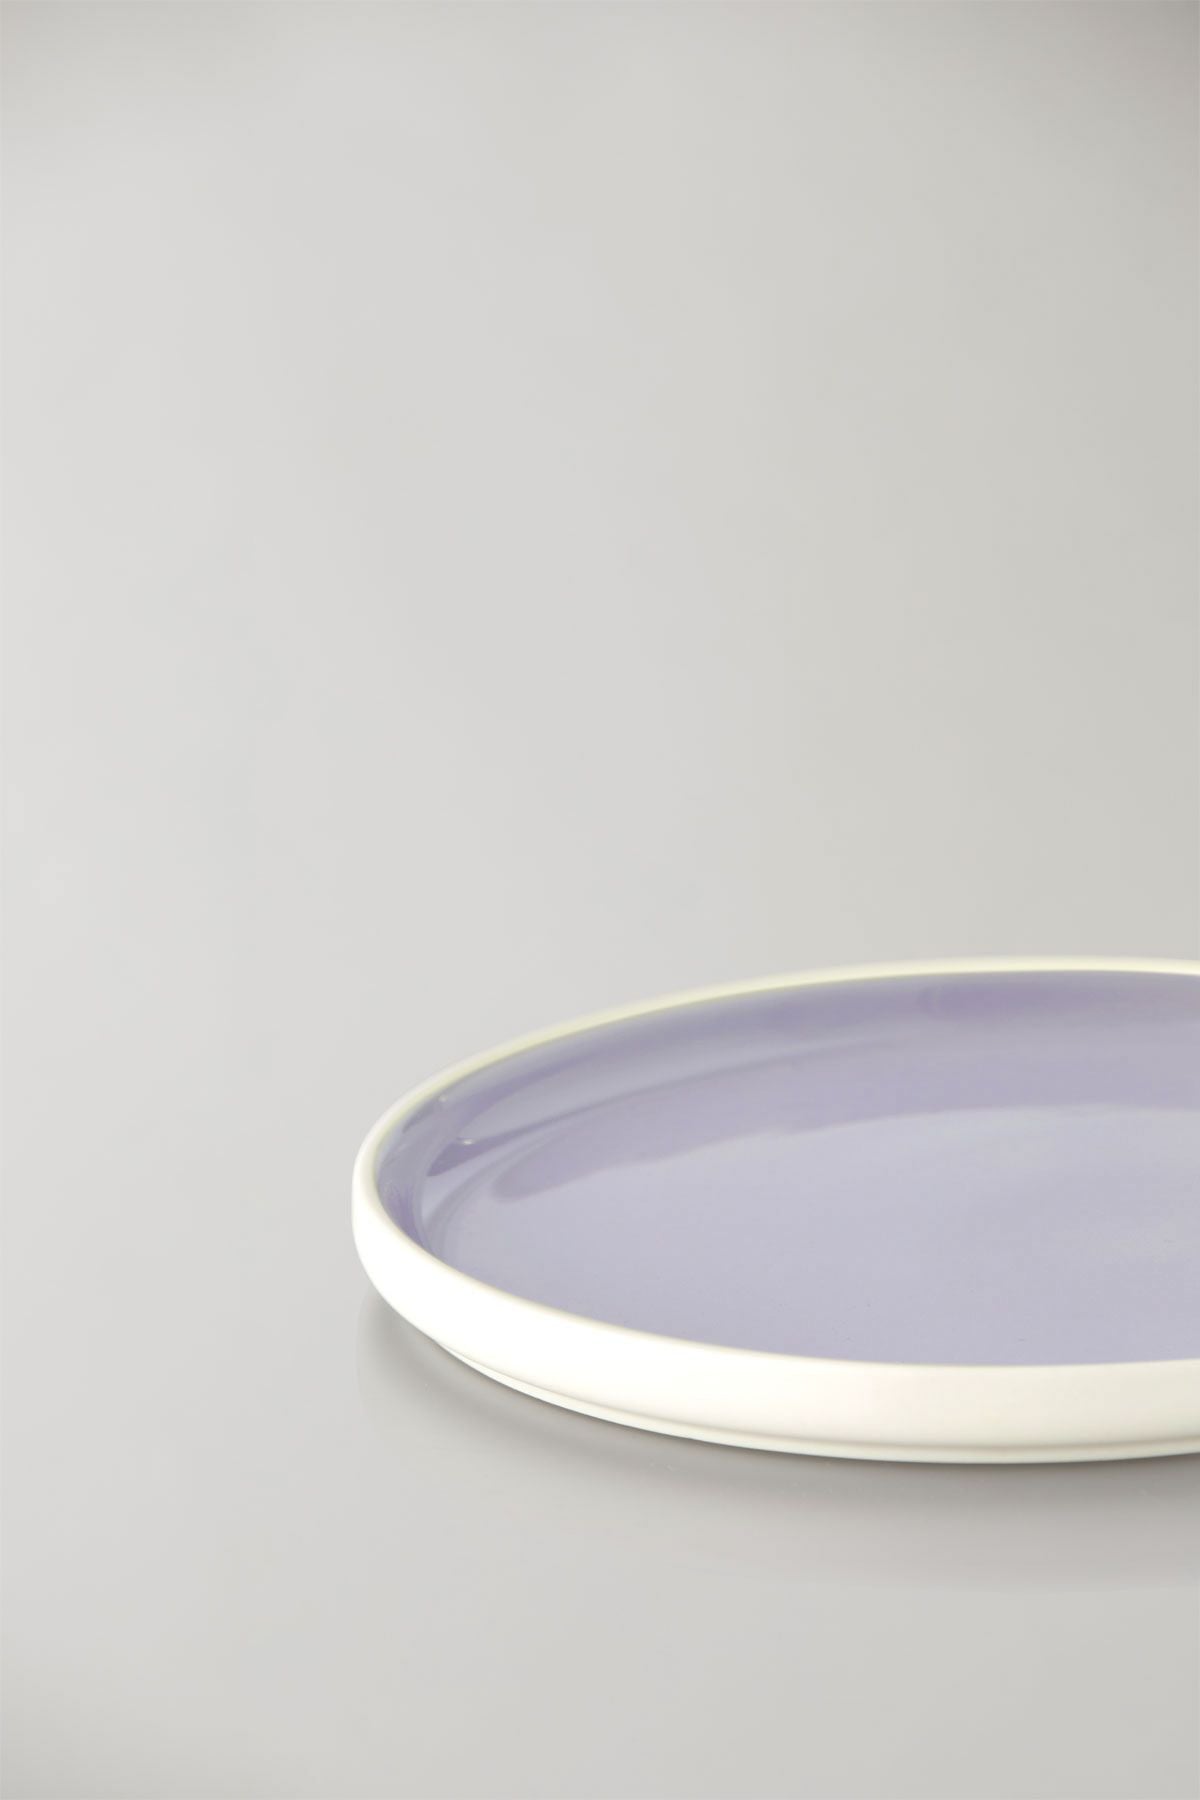 Estudio sobre Clayware Conjunto de 2 placas medianas, marfil/luz púrpura